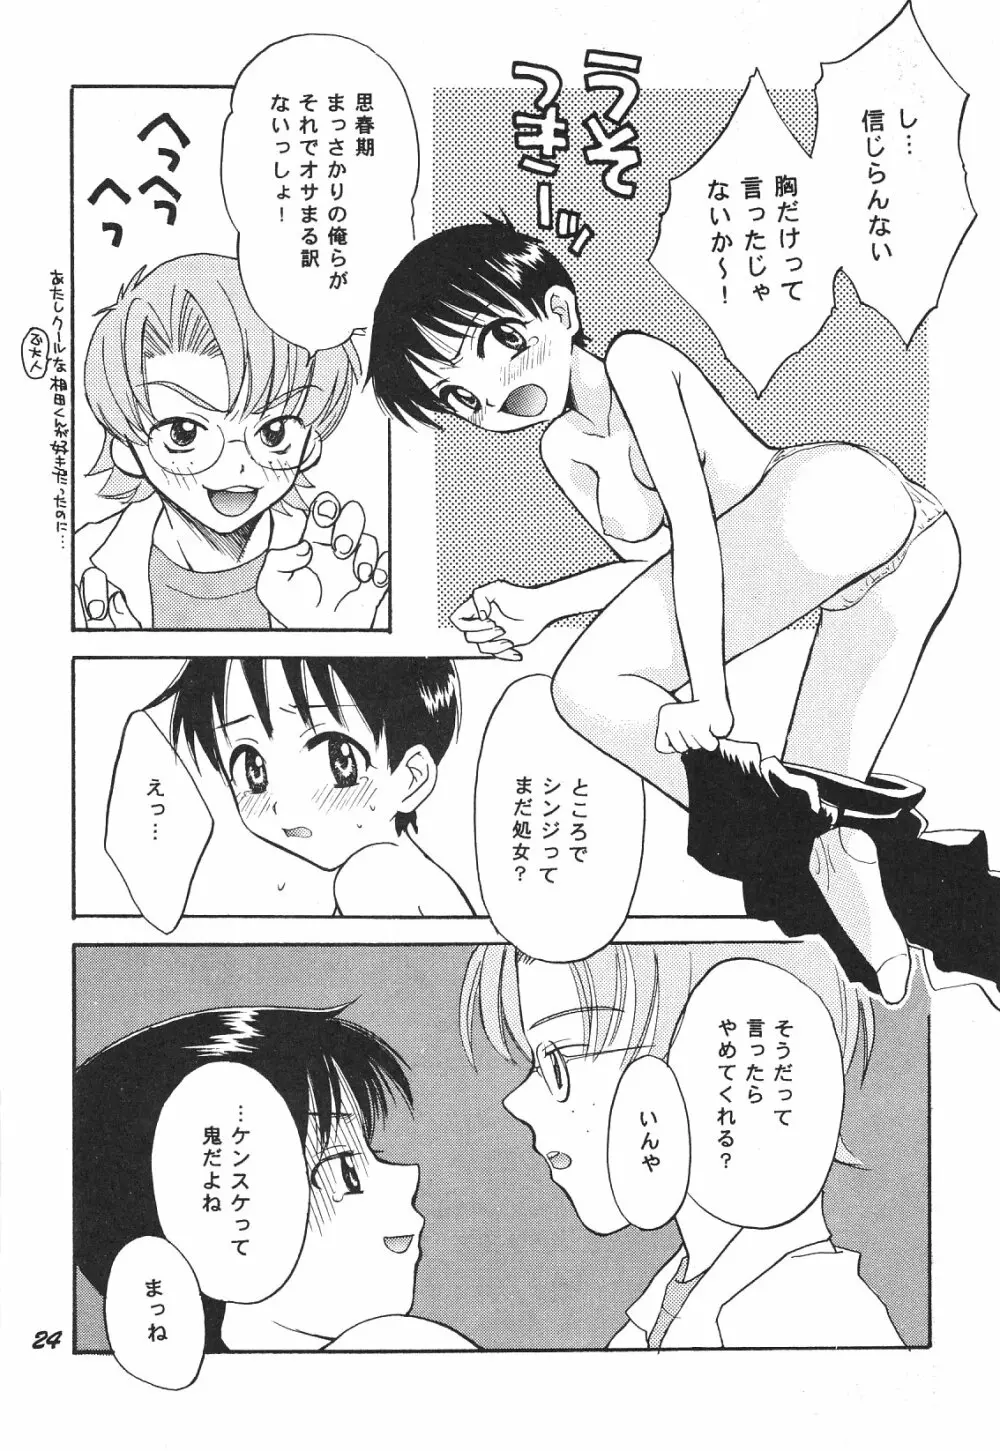 Maniac Juice 女シンジ再録集 '96-'99 - page24